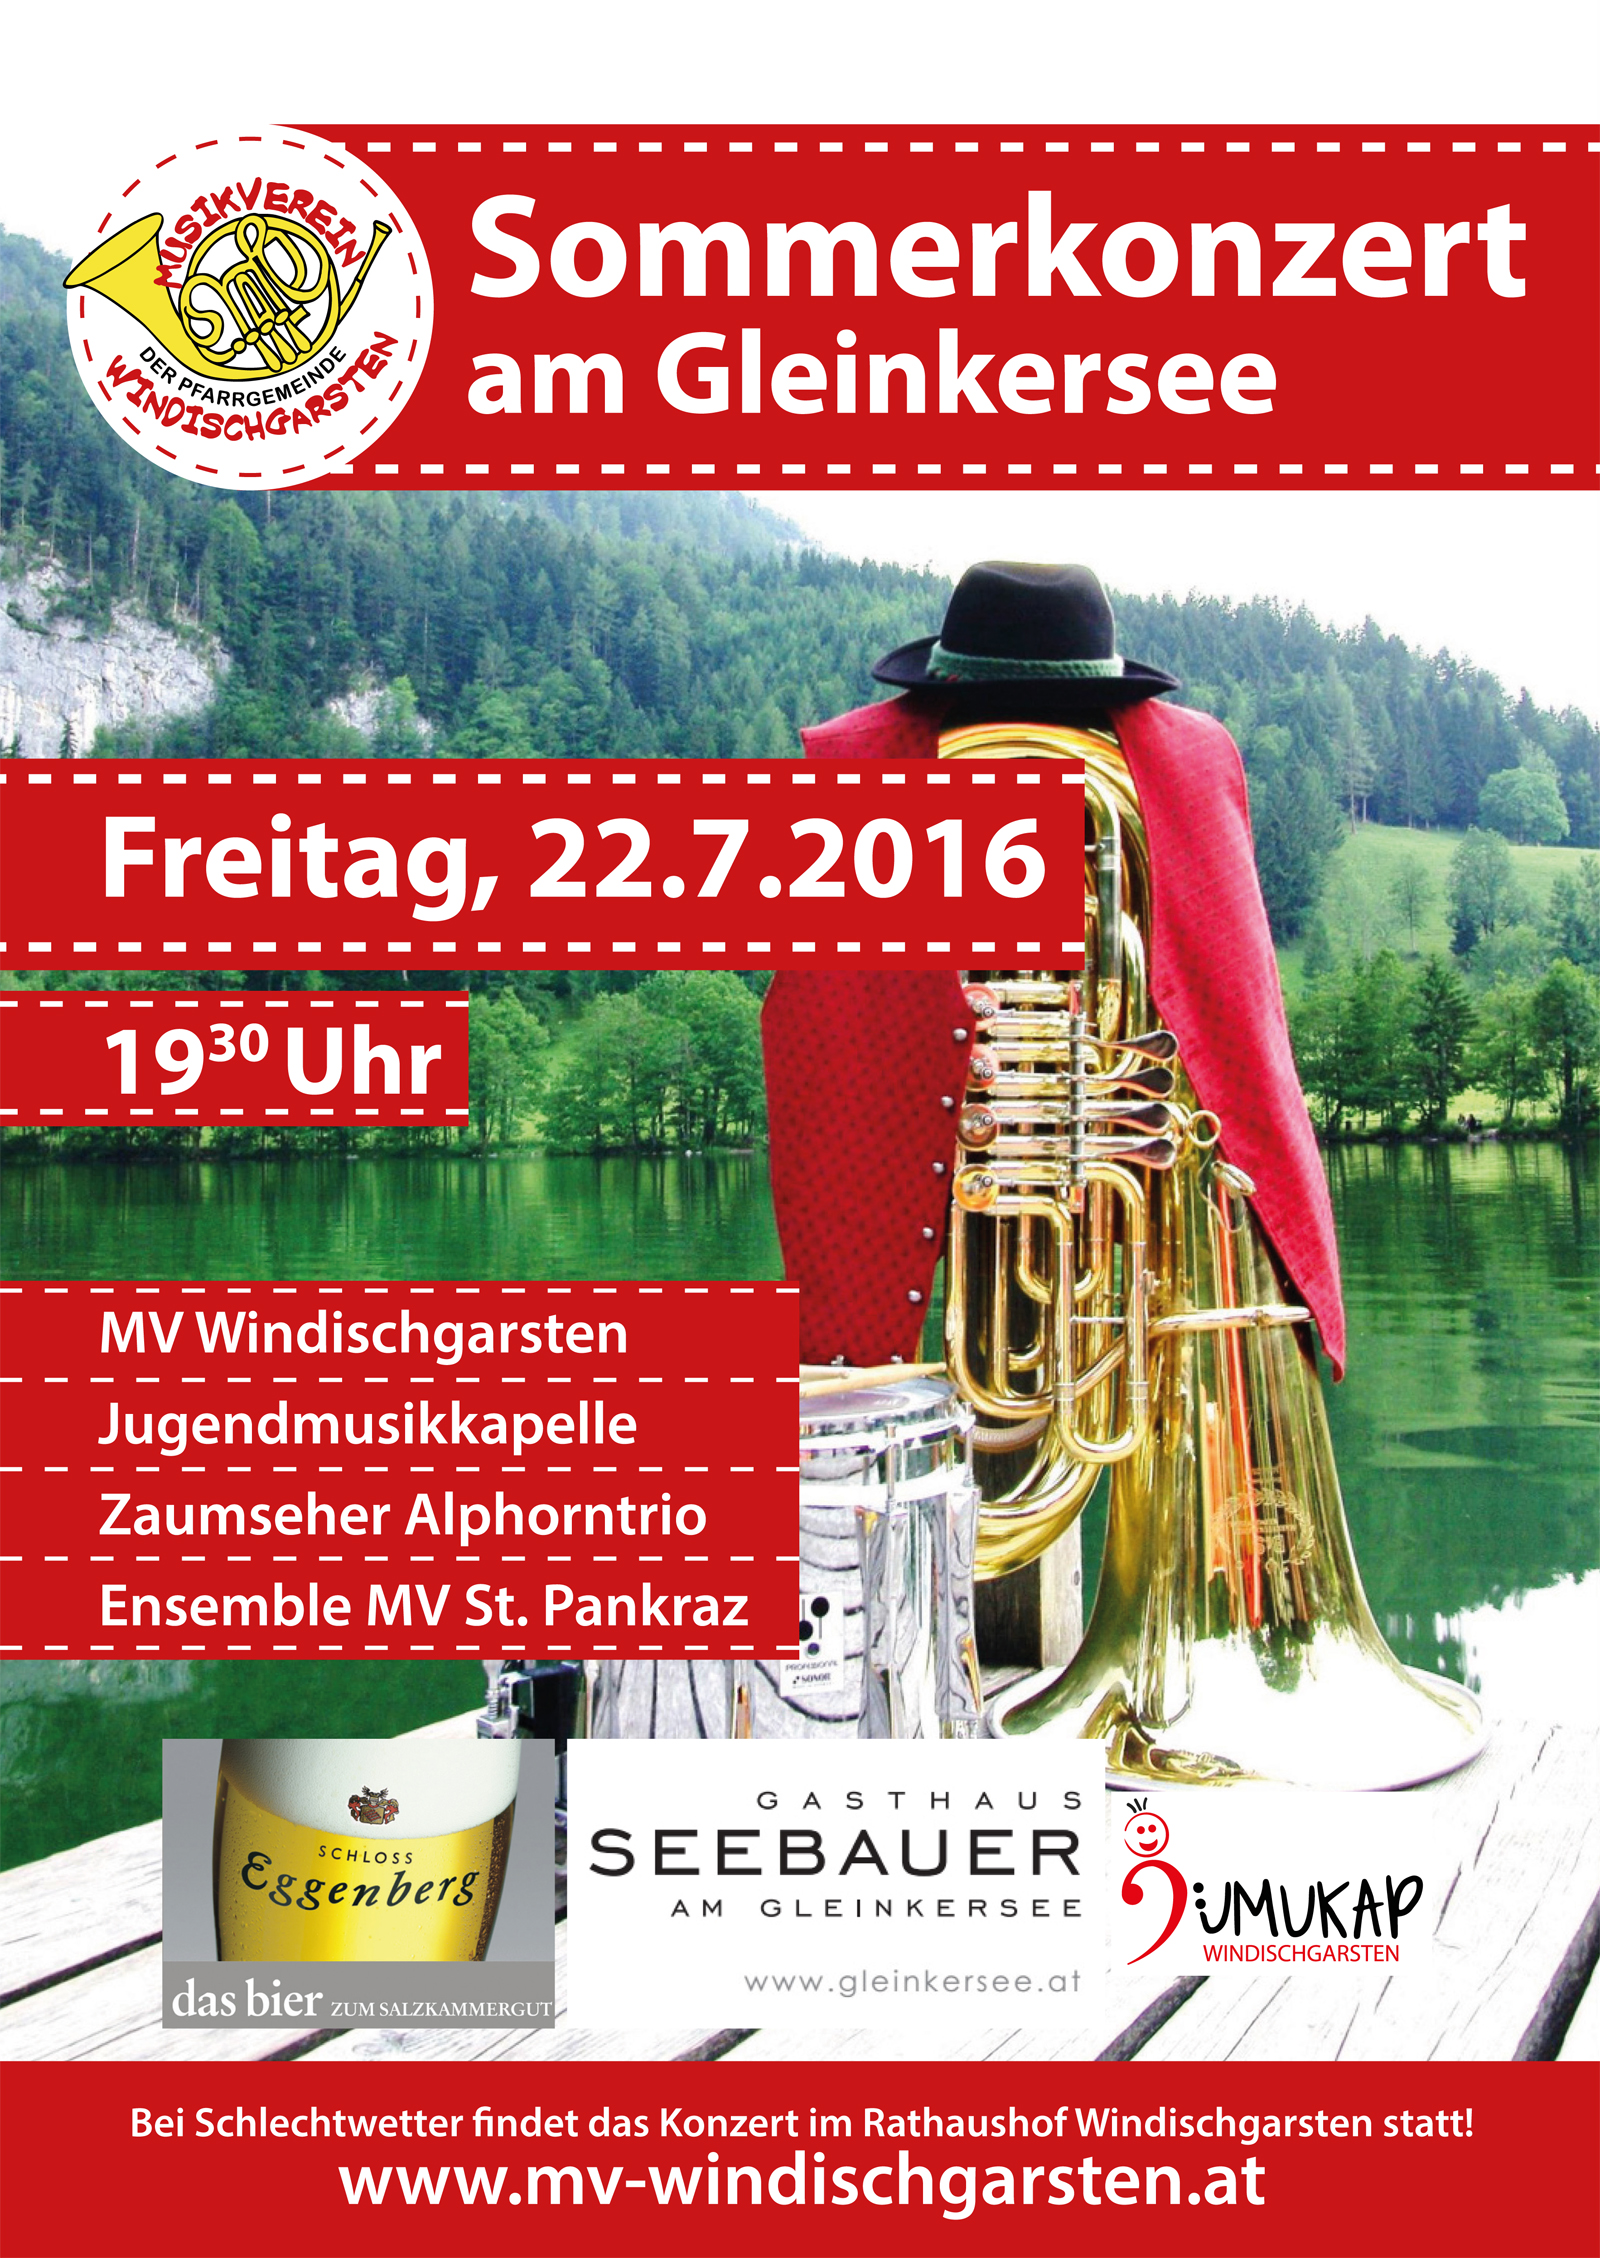 Sommerkonzert am Gleinkersee 2016